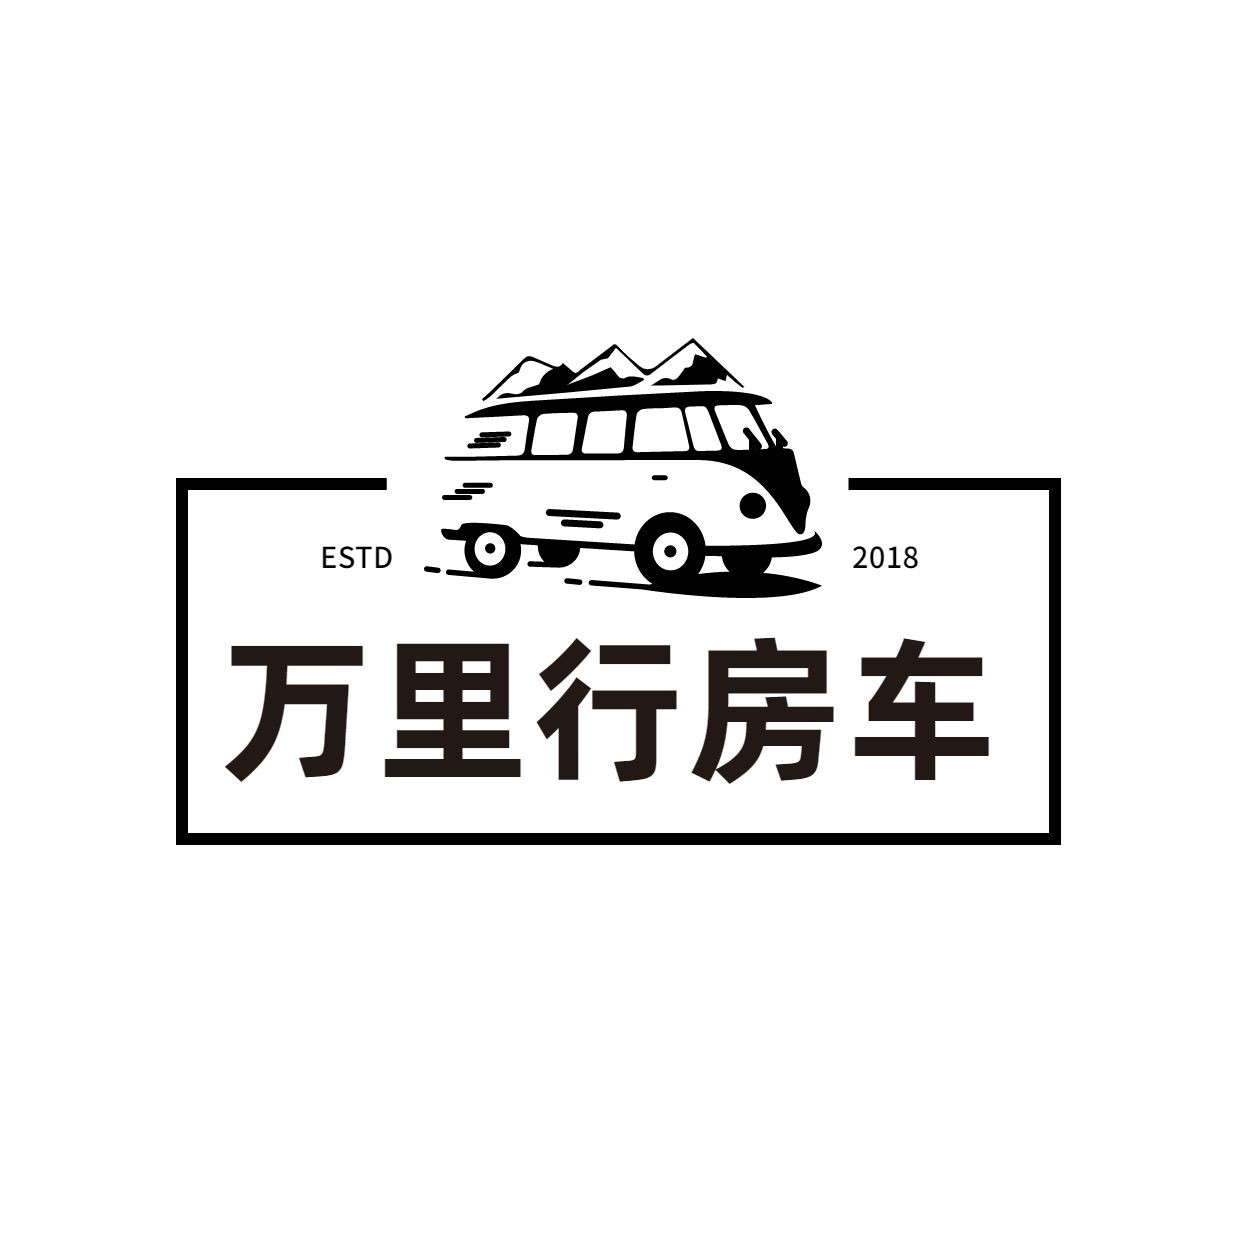 旅游露营房车logo设计预览效果